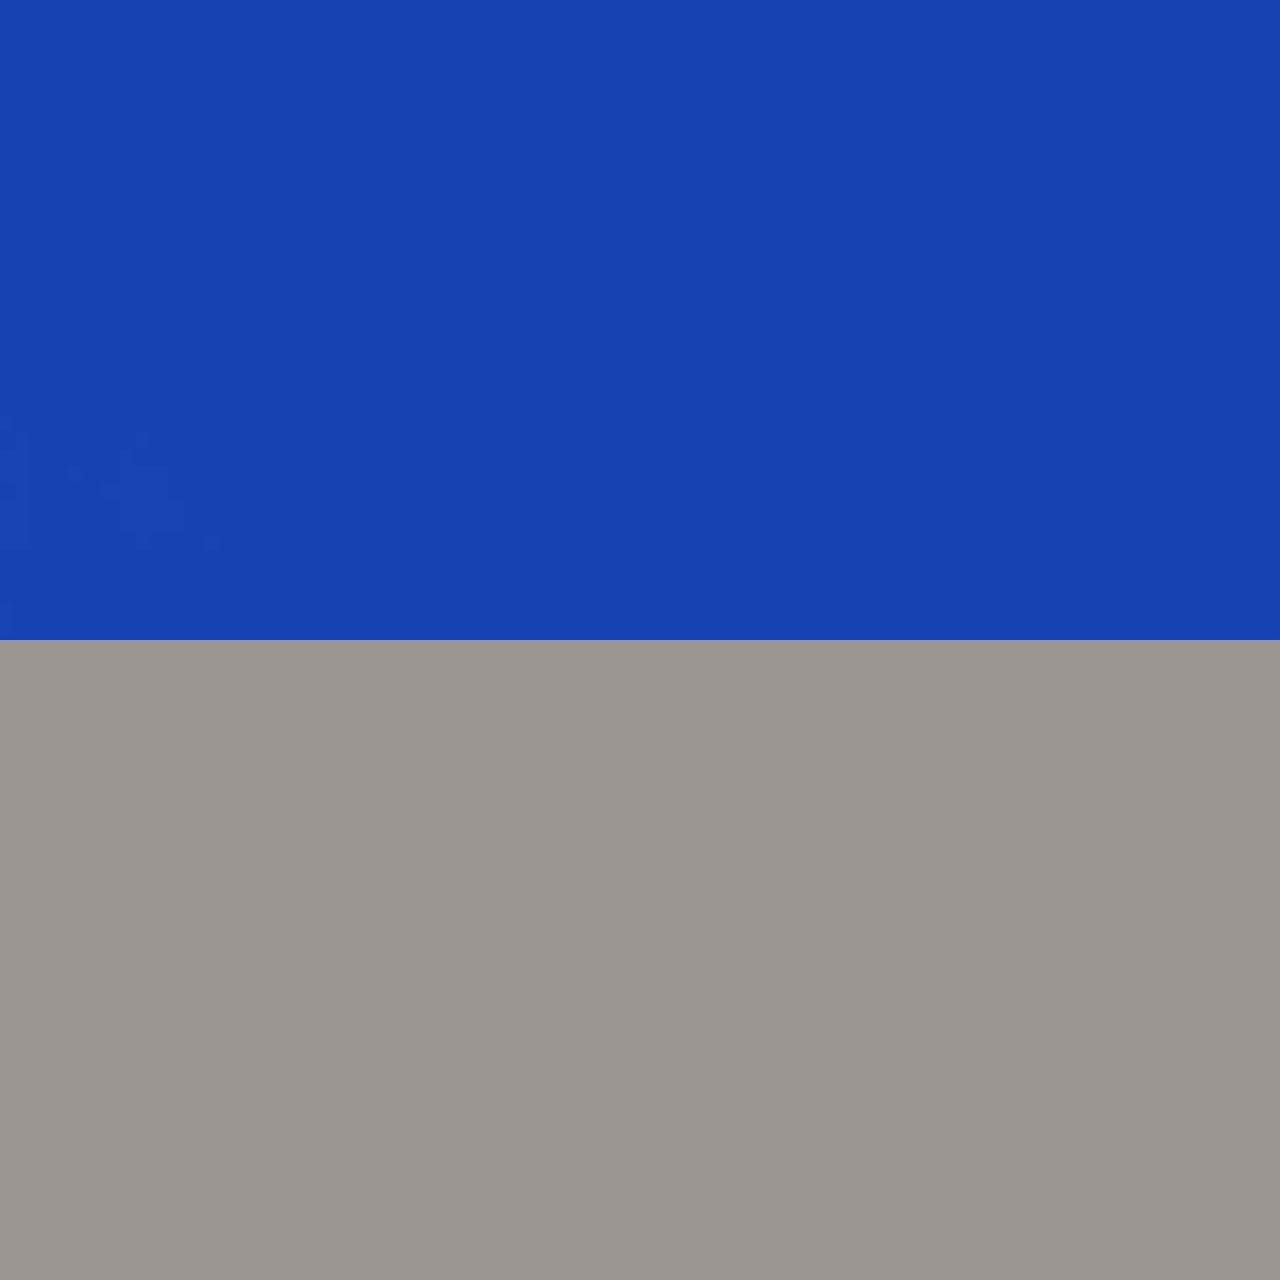 синий/серый